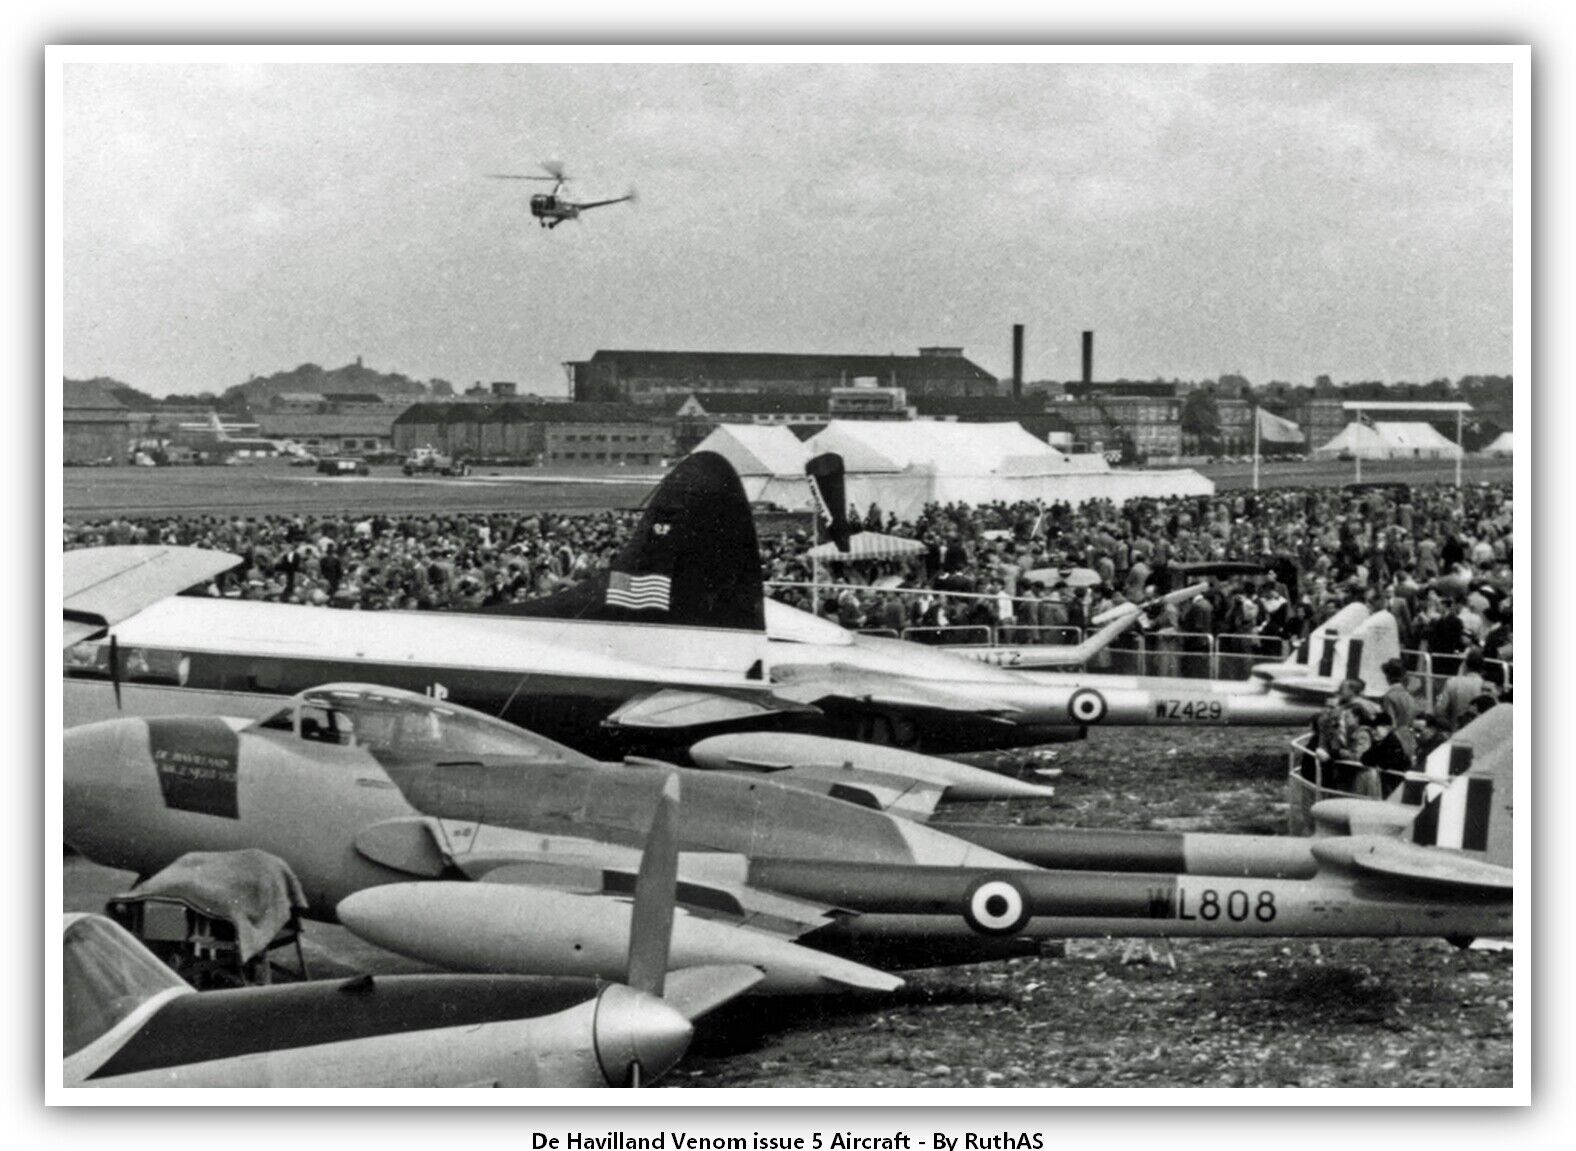 De Havilland Venom issue 5 Aircraft